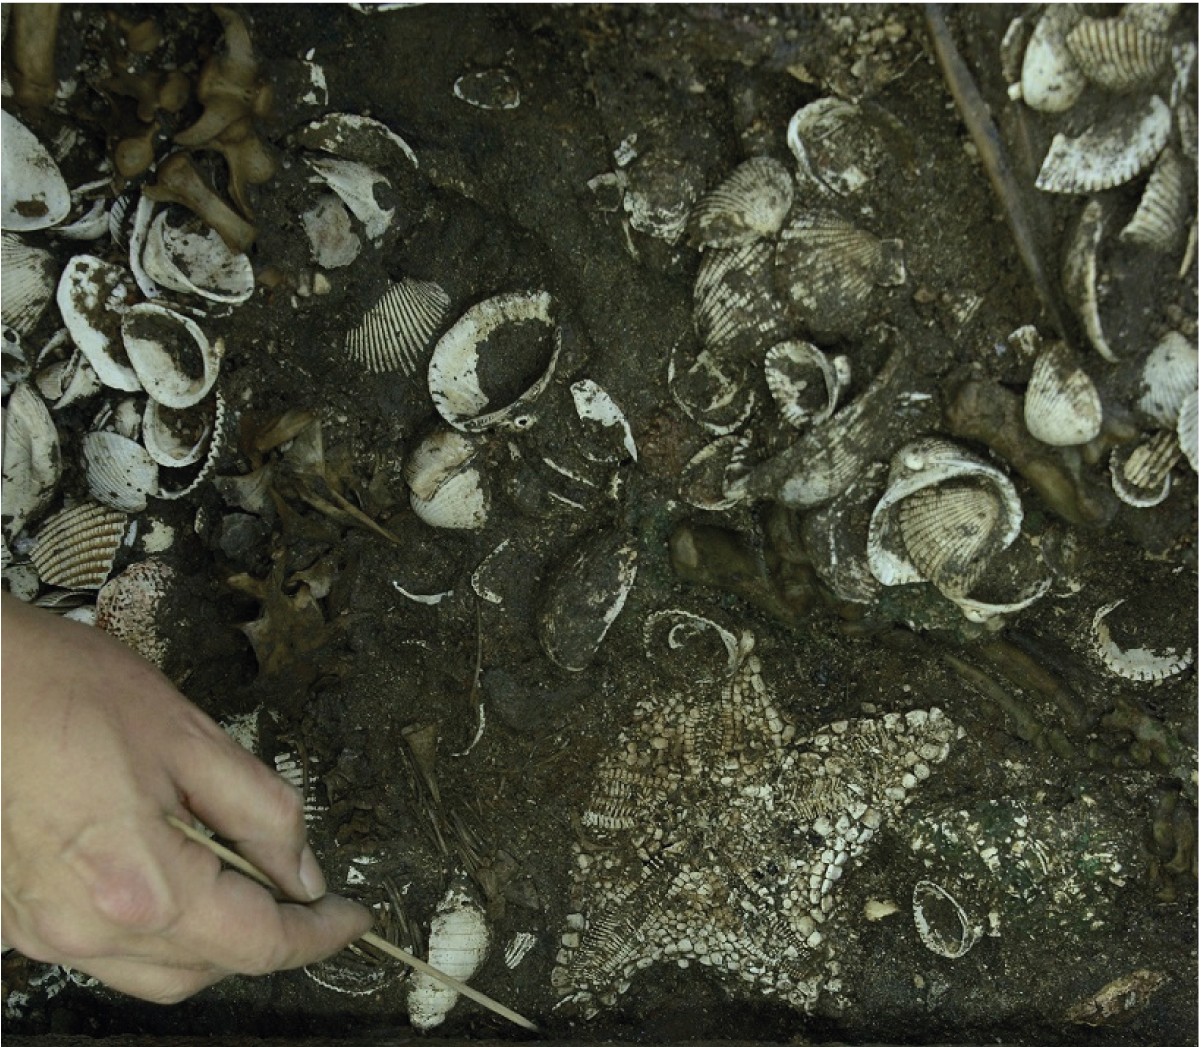 Depósito de estrelas-do-mar da espécie Nidorellia armata (Foto: Meliton Tapia INAH)